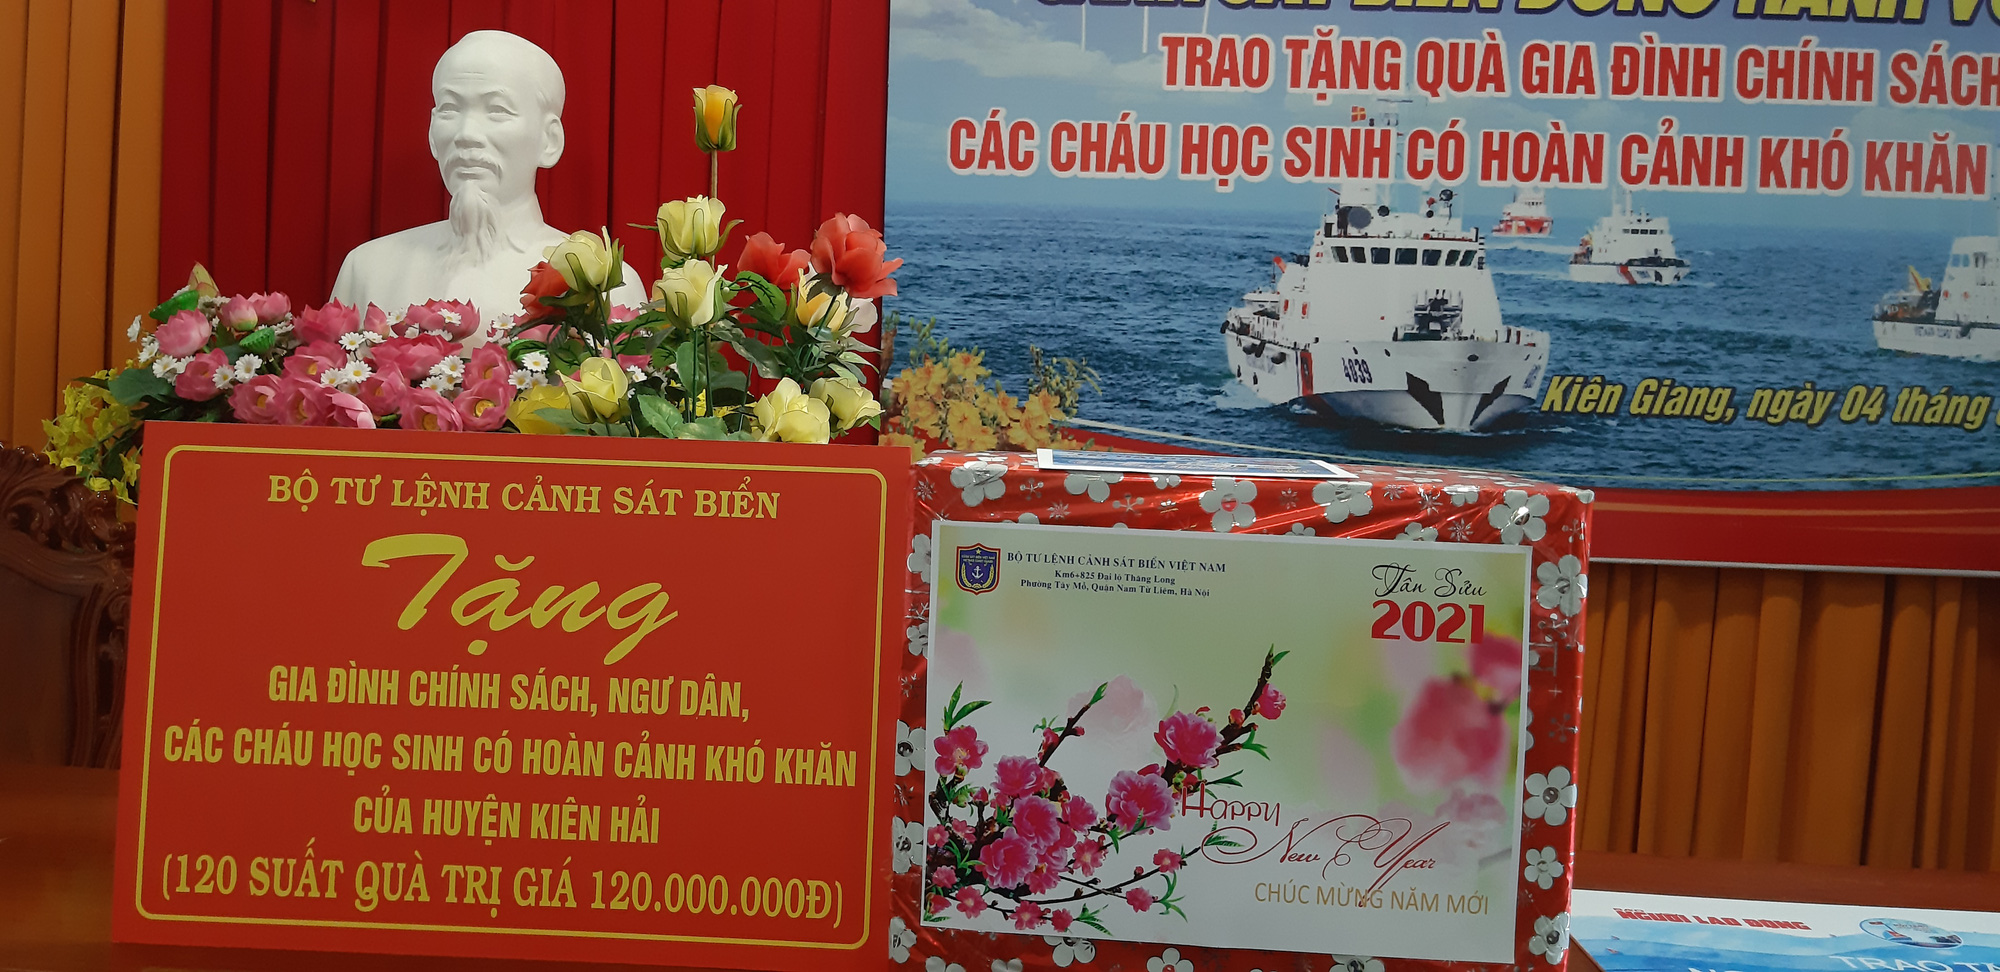 Báo Người Lao Động cùng Cảnh sát biển Việt Nam trao cờ Tổ quốc và quà Tết cho ngư dân Kiên Giang - Ảnh 5.